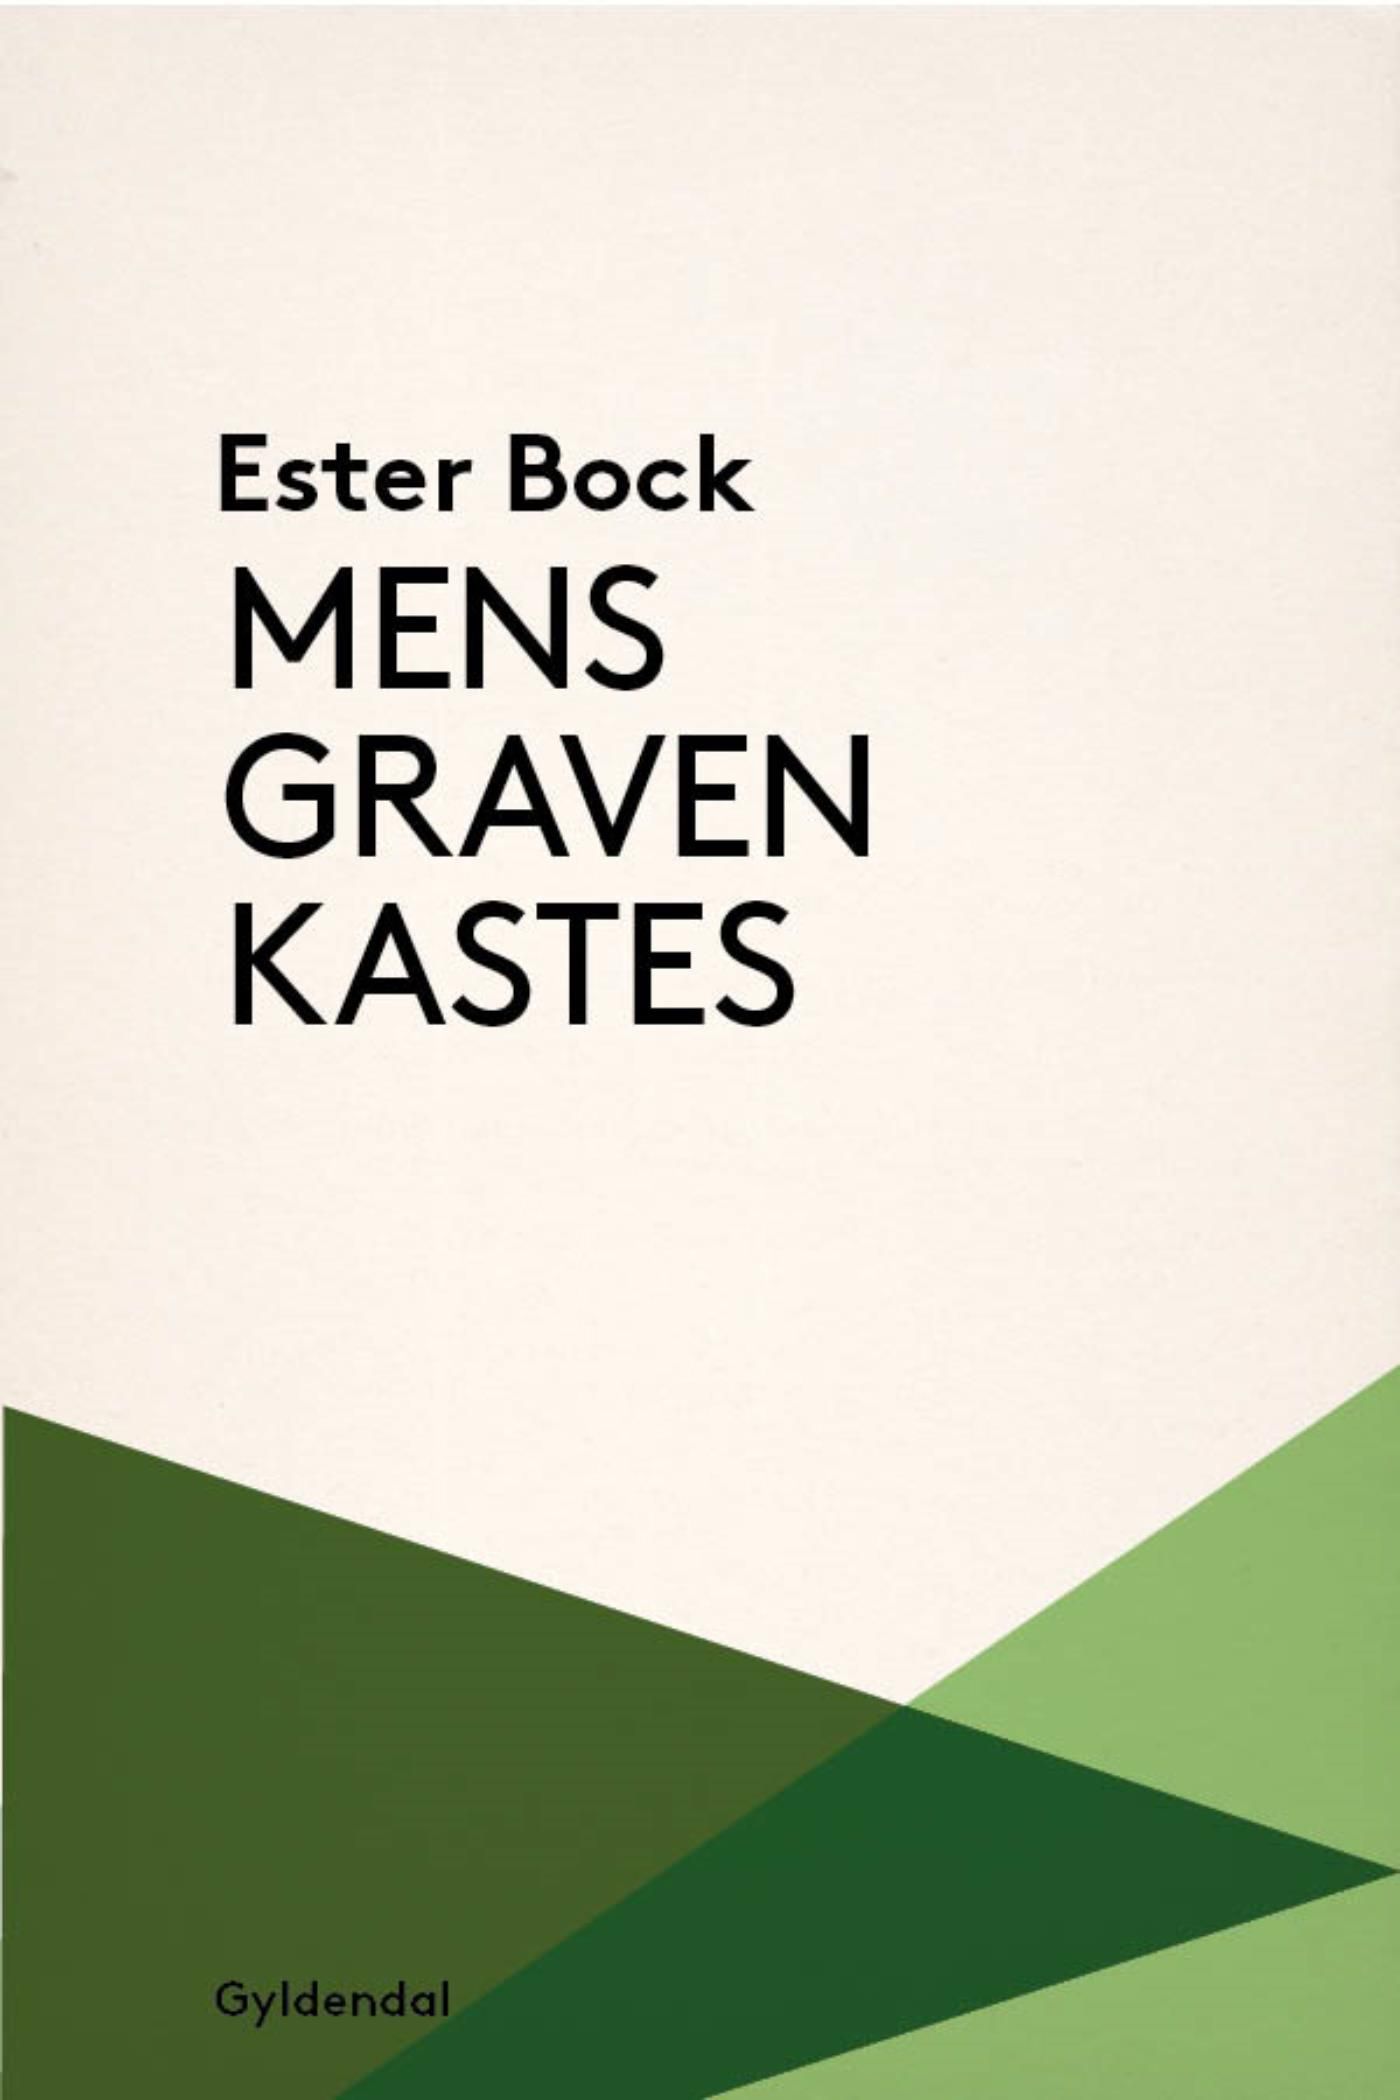 Mens graven kastes, e-bog af Ester Bock